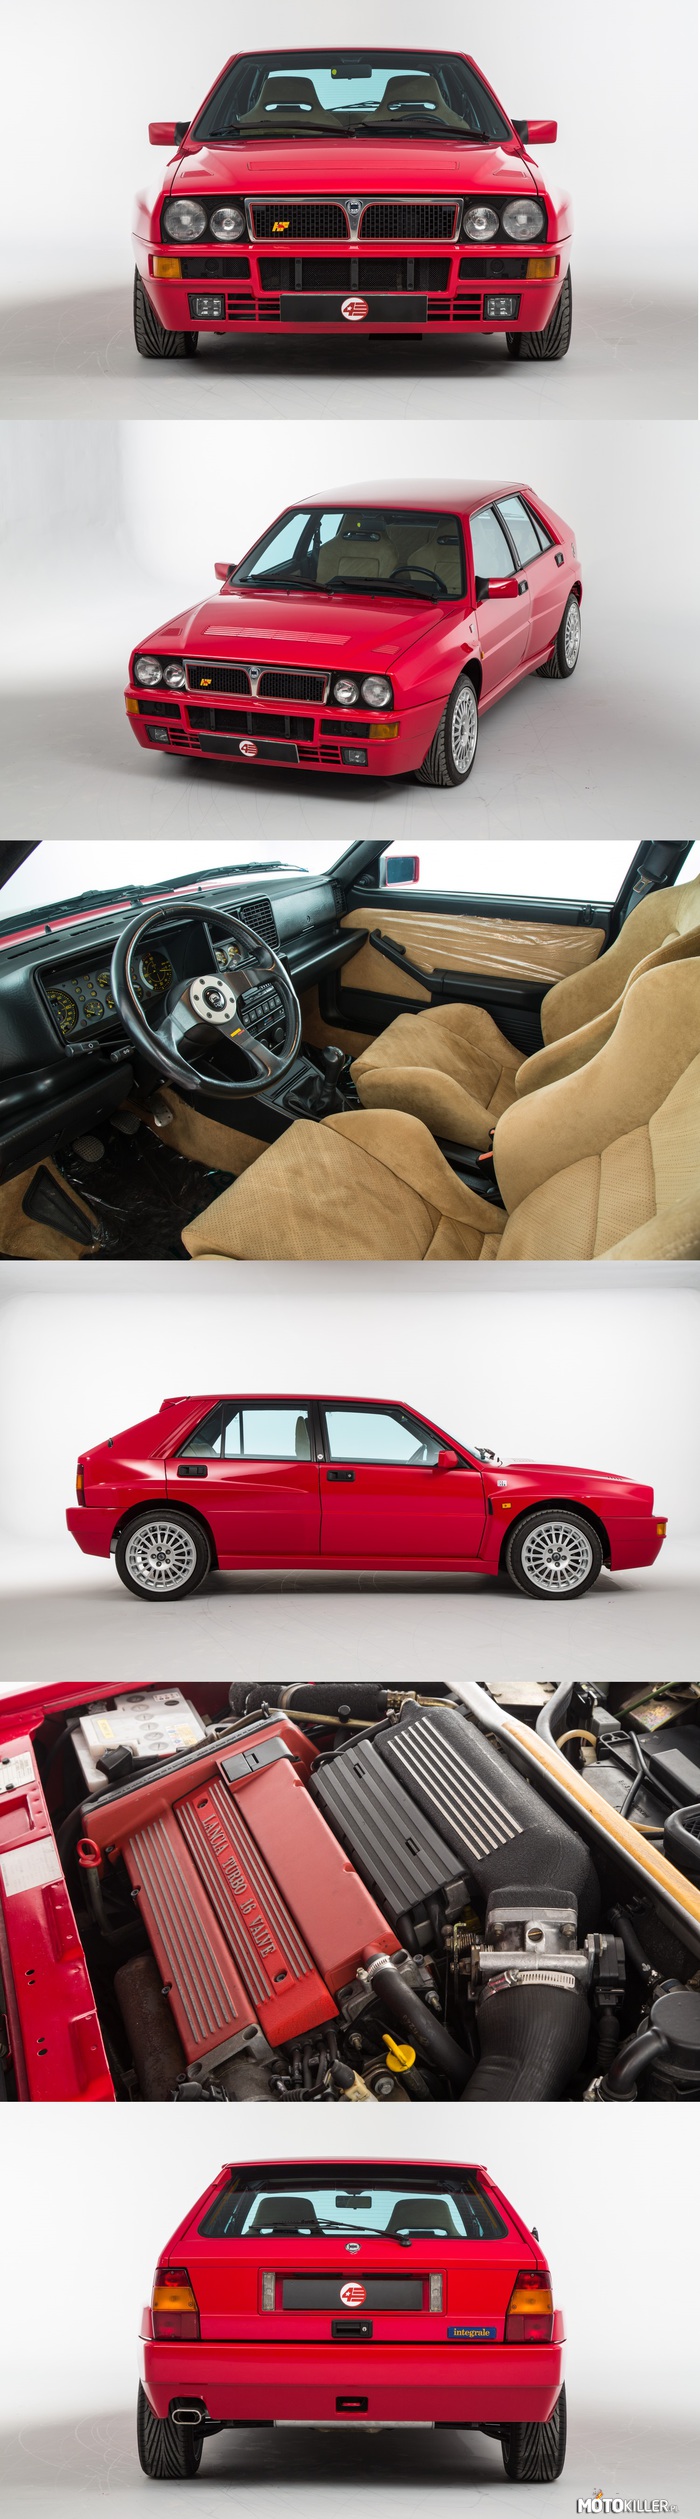 Lancia Delta Integrale Evo II 1994 – Finalna, najbardziej dopracowana wersja kultowej rajdówki w cywilnej odsłonie. Silnik 2.0 Turbo 16V 212KM na 5-biegowej manualnej skrzyni pozwalał osiągnąć 100km/h w czasie 5.7 s. Z wyposażenia auto posiada ABS, klimatyzację, fotele kubełkowe Recaro w alkantarze, kierownicę trójramienną Momo Corse. 